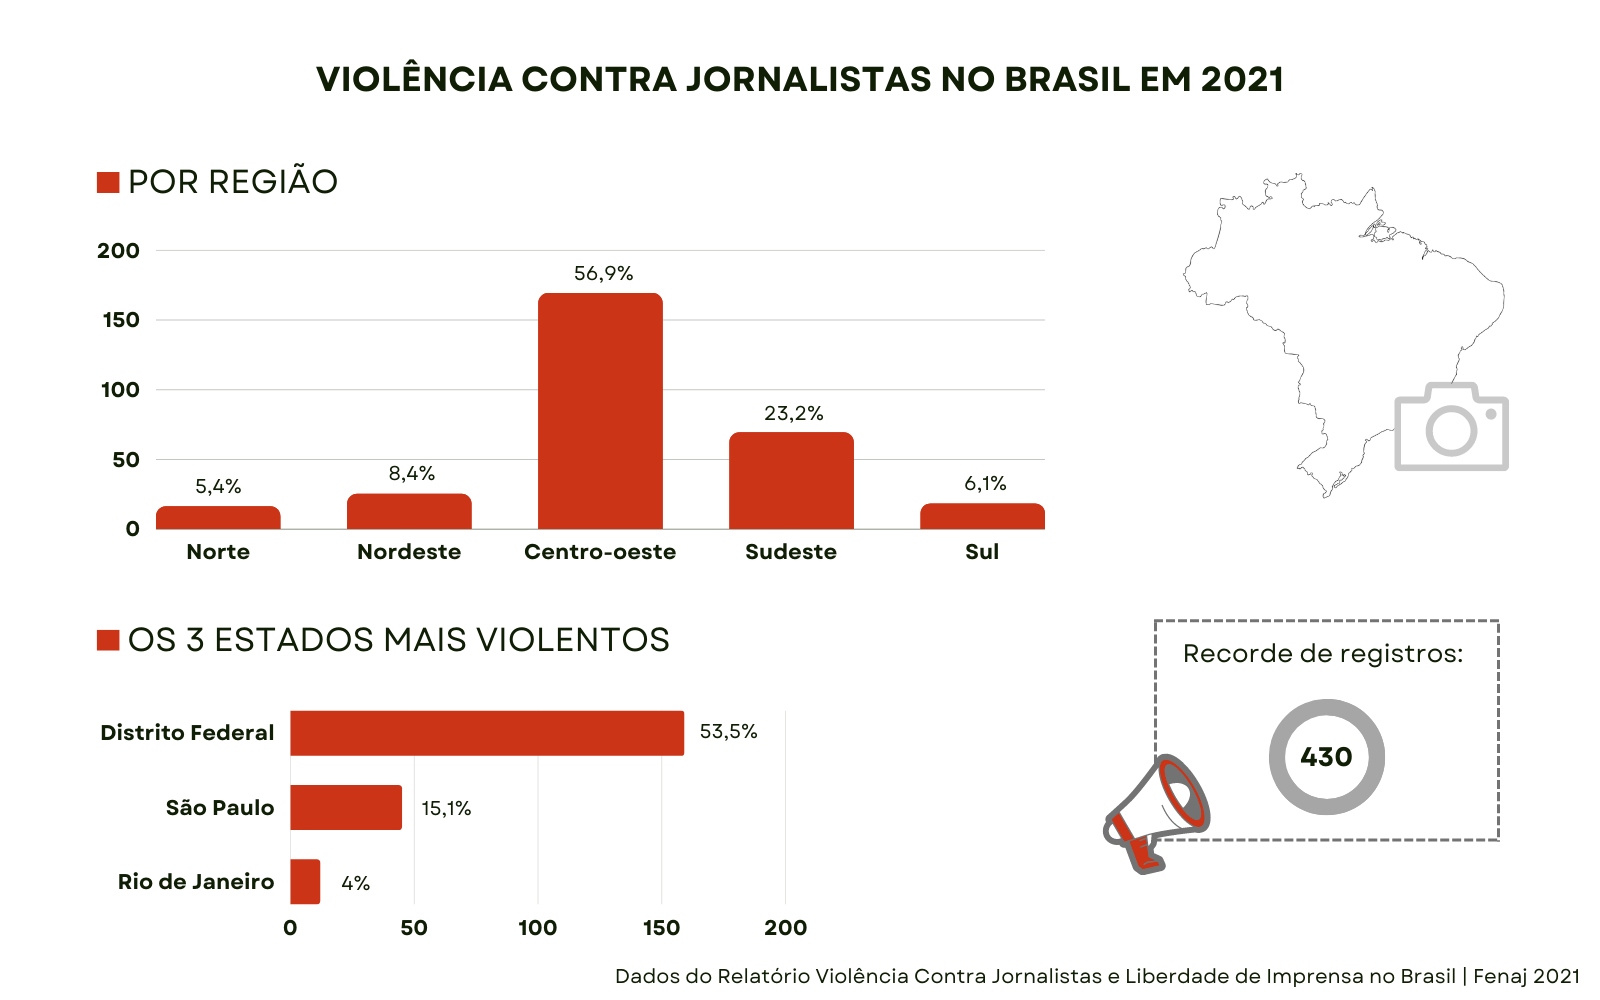 Dados do Relatório Violência Contra Jornalistas e Liberdade de Imprensa no Brasil publicado pela Fenaj